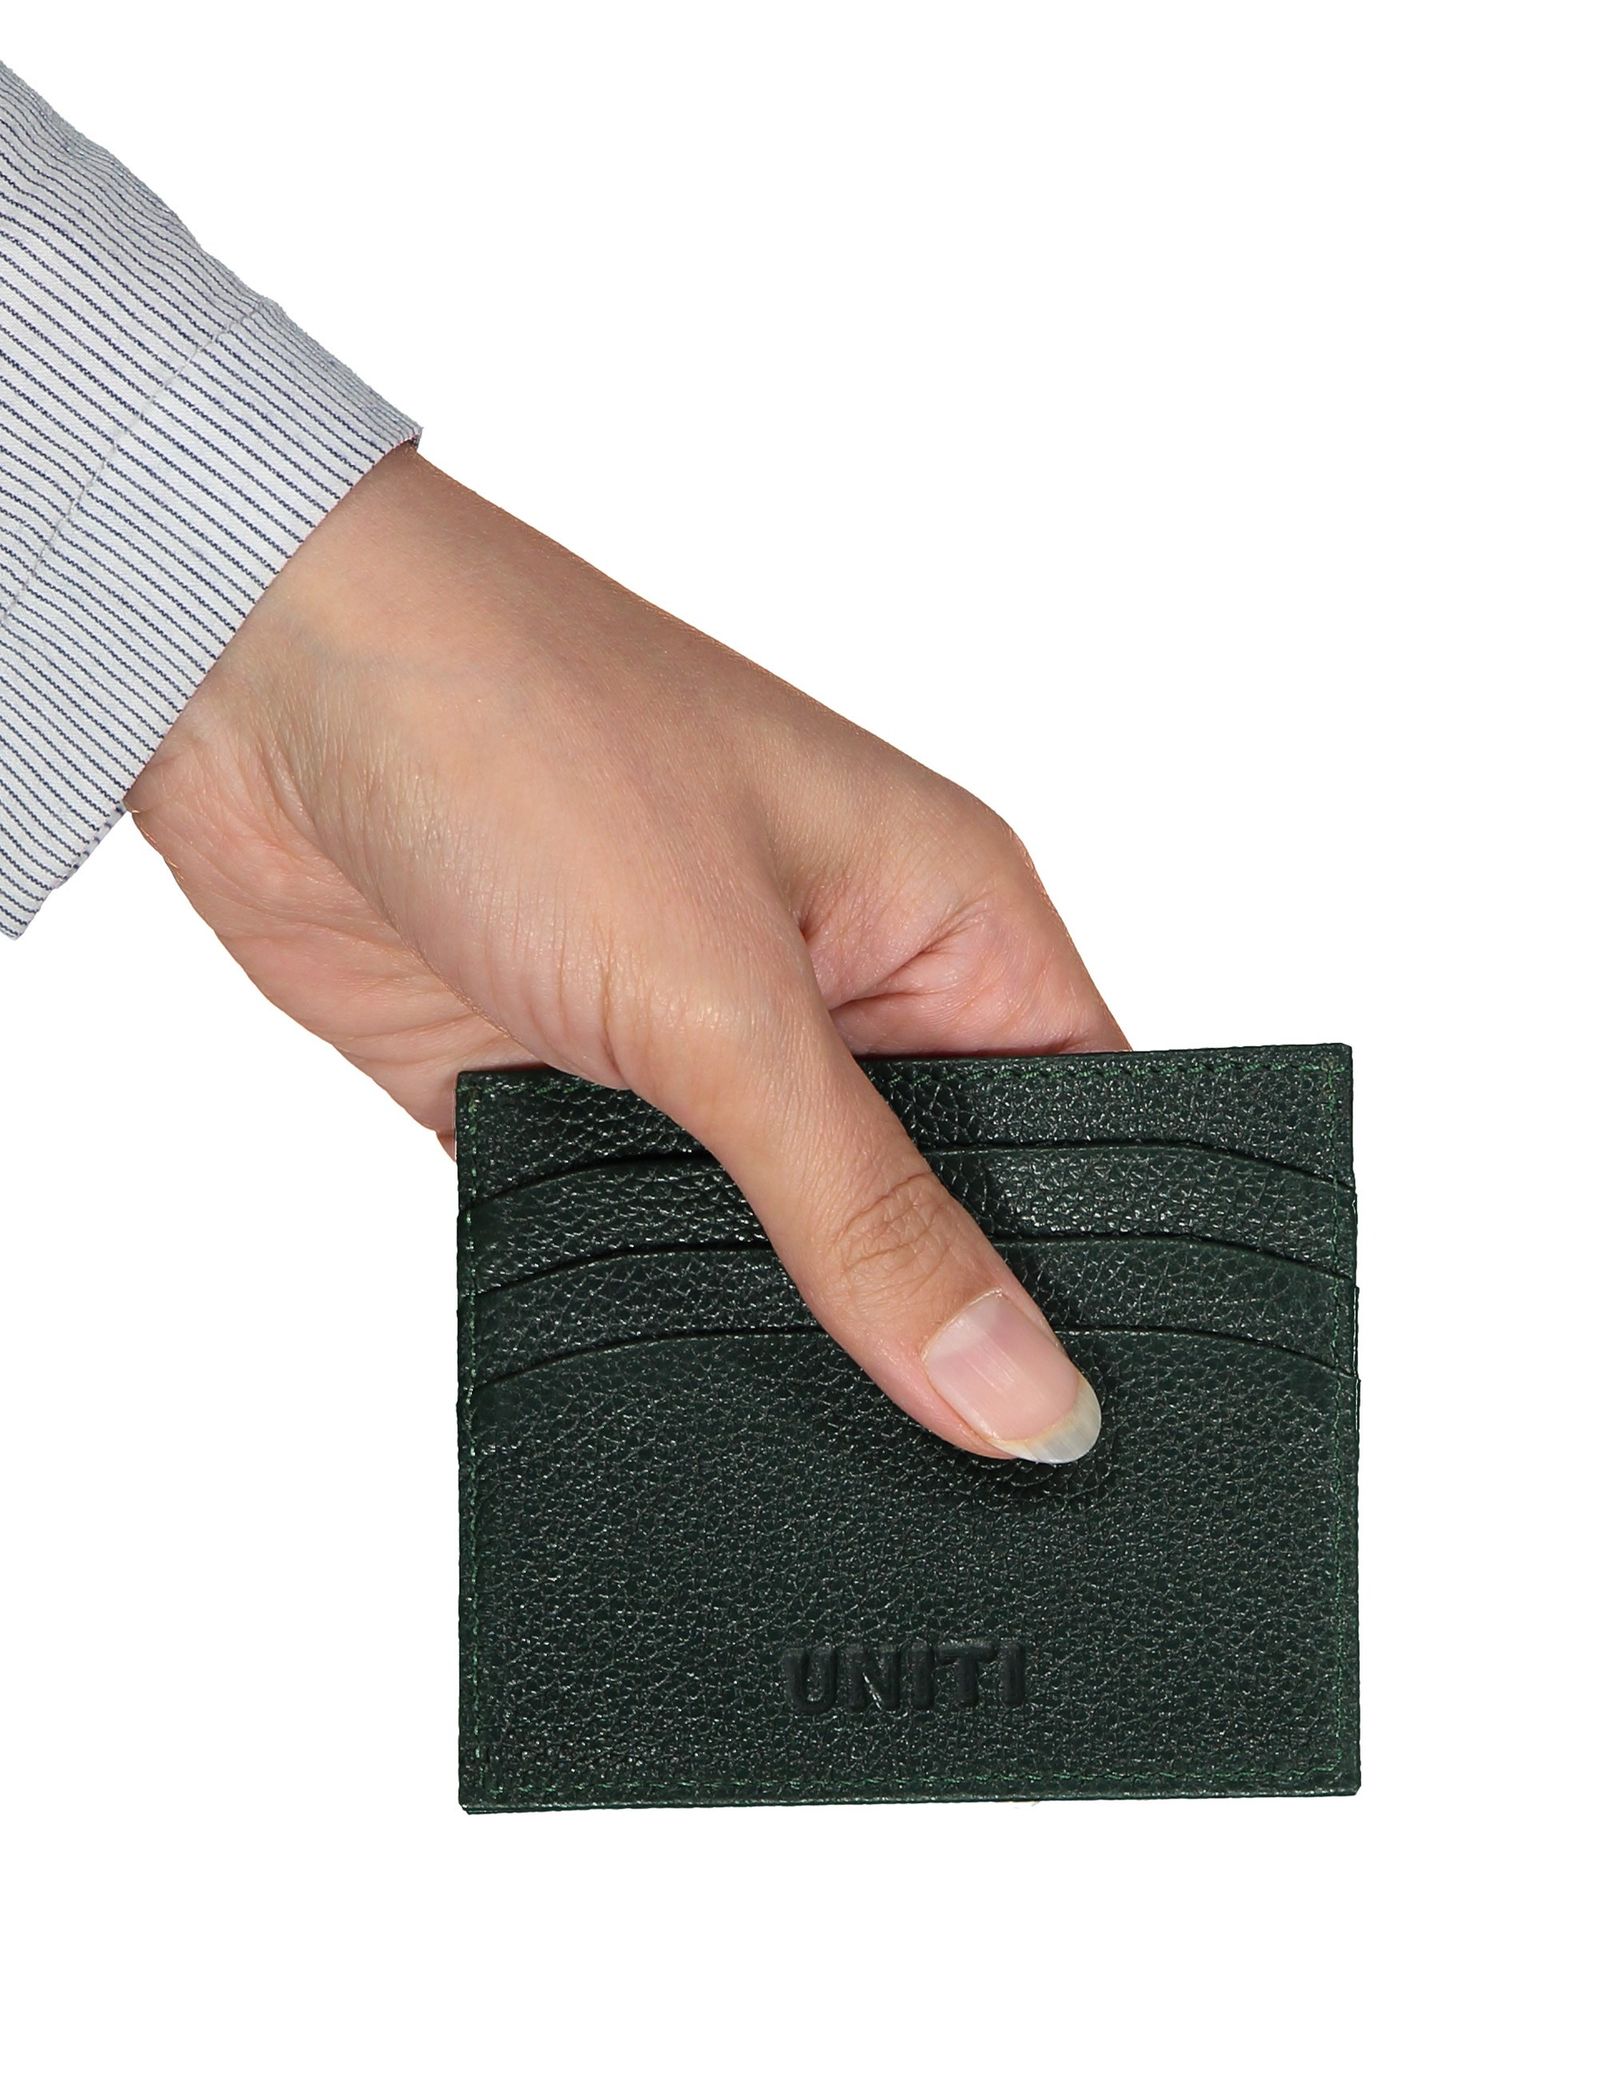 کیف کارت بزرگسال - یونیتی - سبز - 5